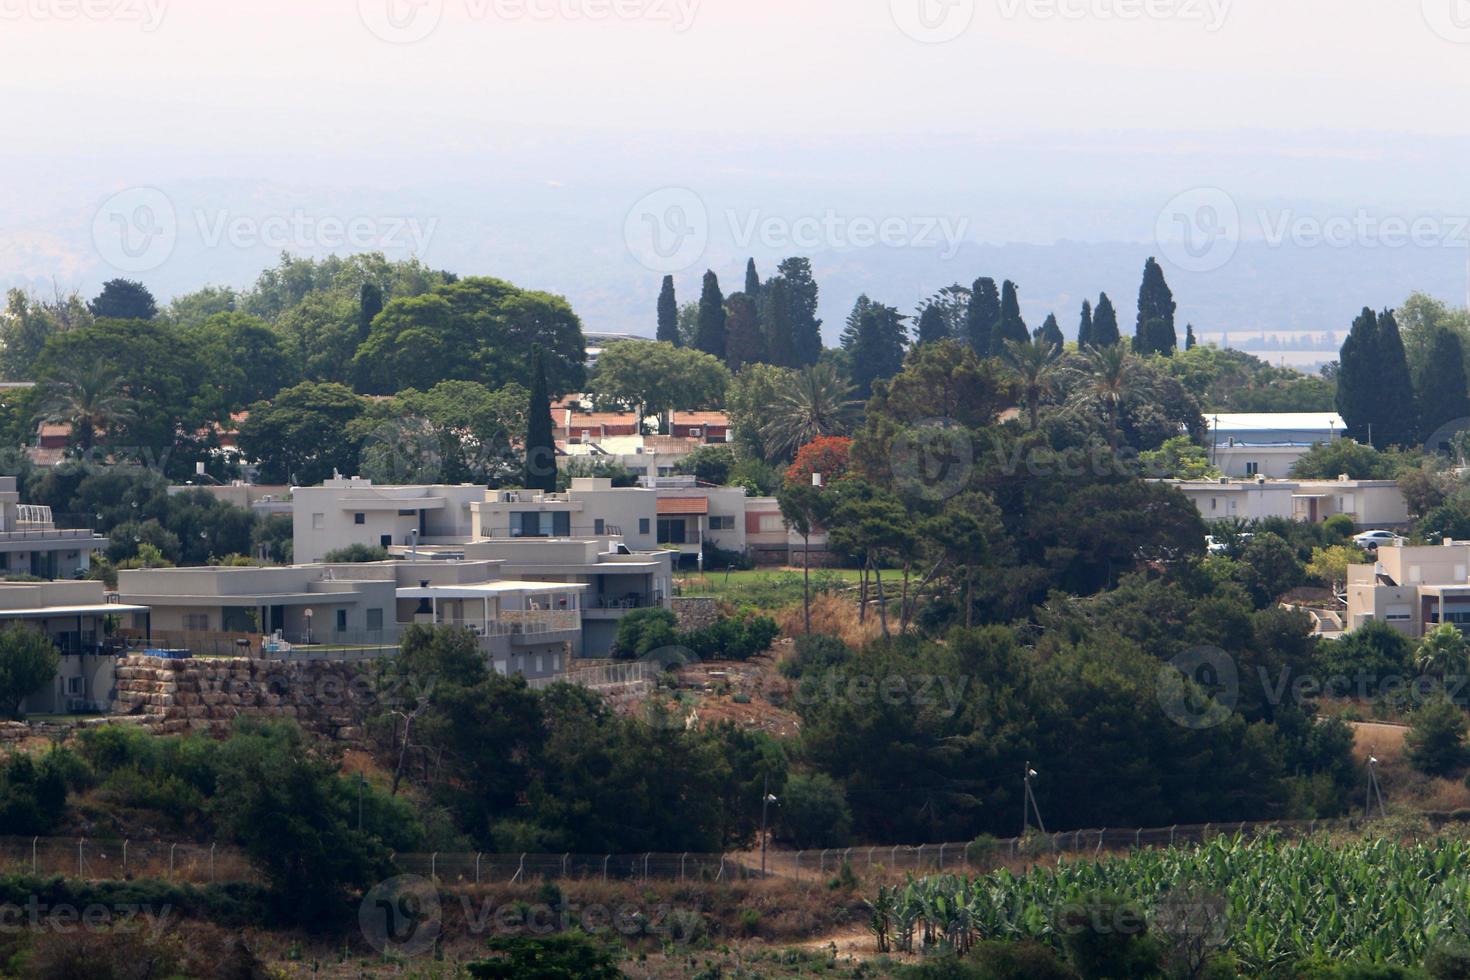 Landschaft in einer kleinen Stadt im Norden Israels. foto